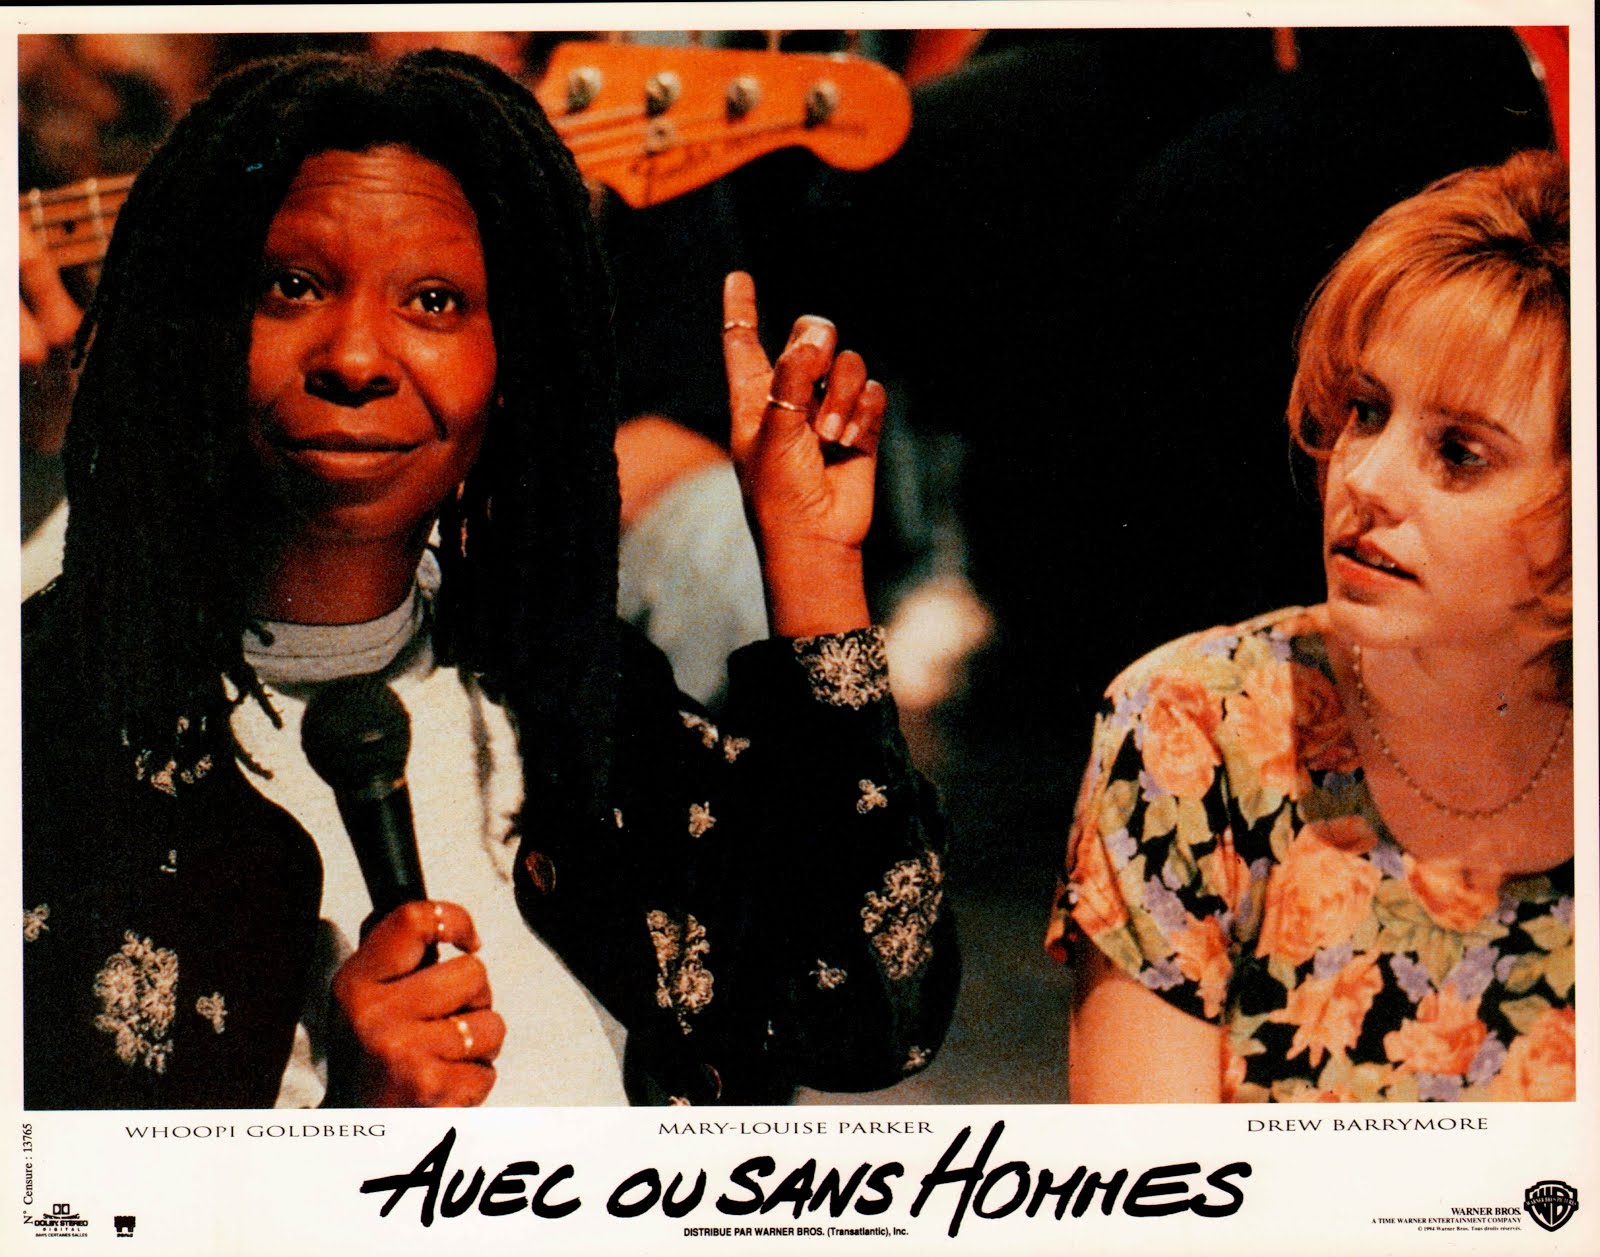 Avec ou sans hommes (1994) Herbert Ross - Boys on the side (25.01.1994 / 1994)